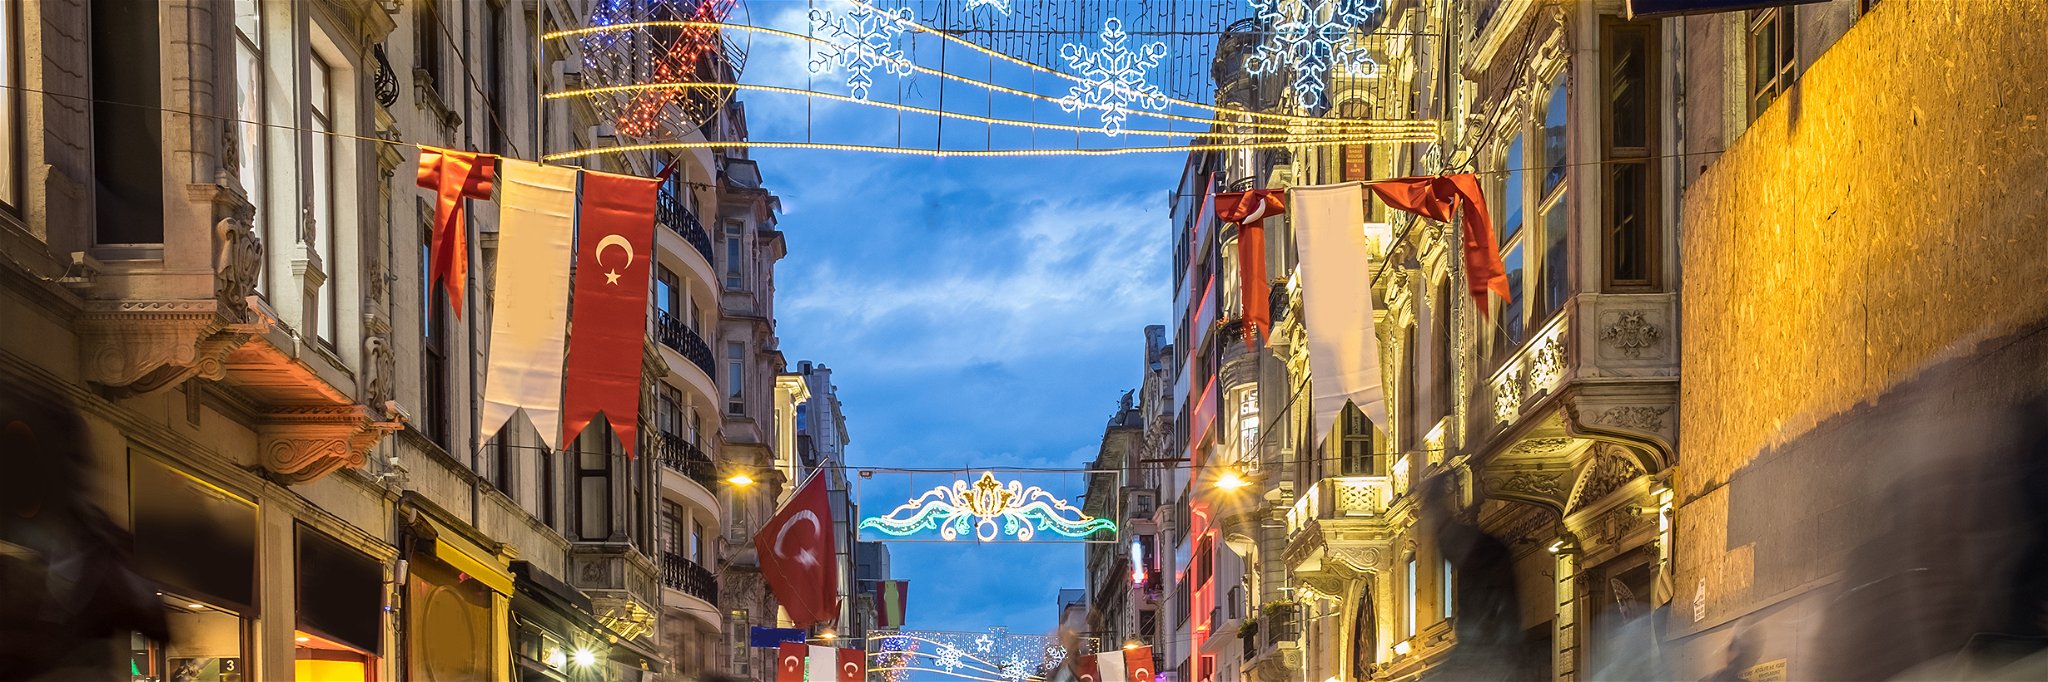 Istiklal street in Istanbul, Turkey.